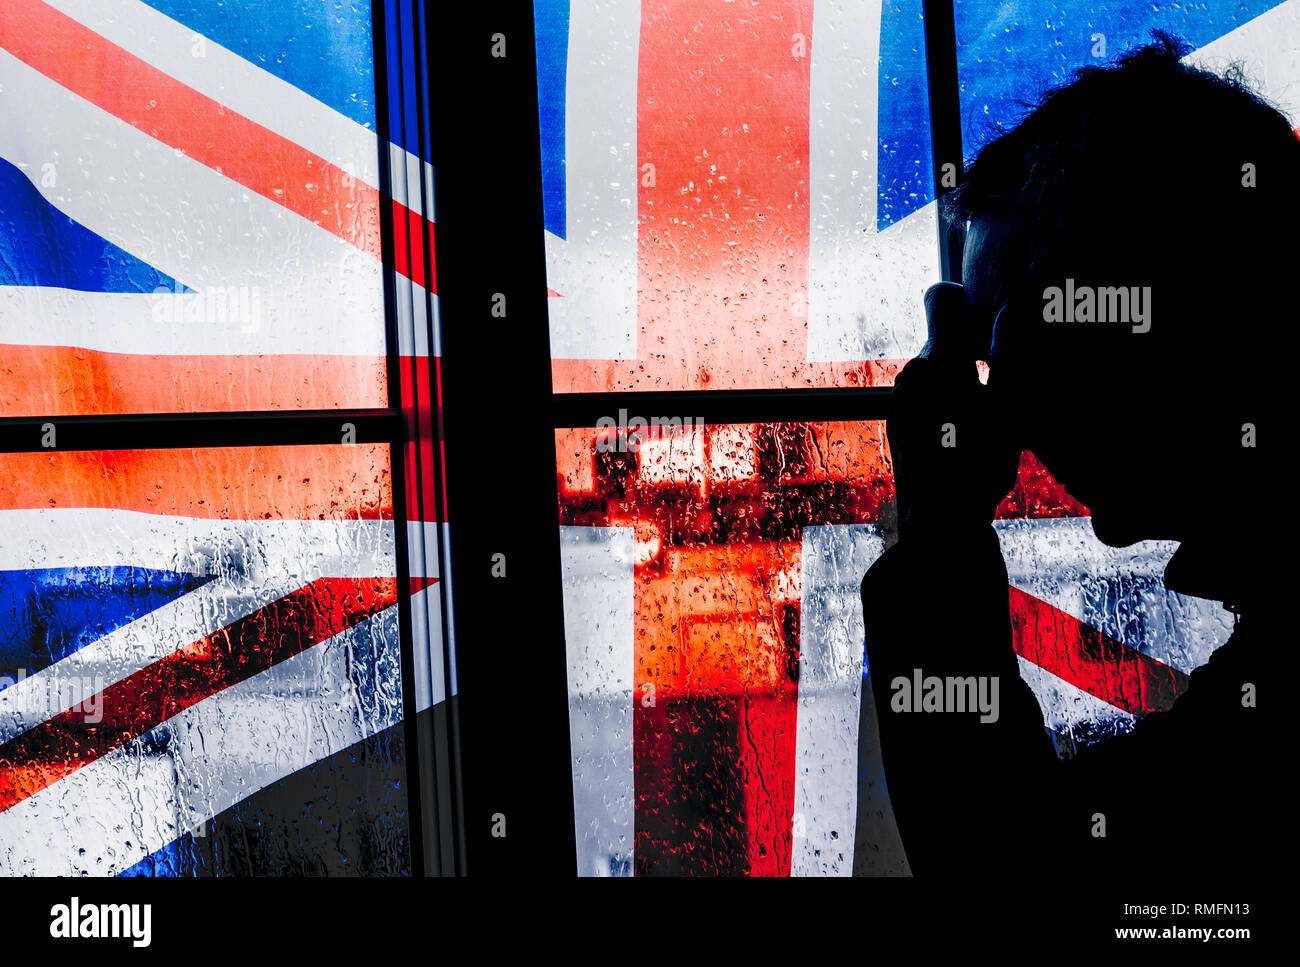 Mann mit Hand am Kopf in der Nähe des Fensters an einem regnerischen Tag mit britischer Flagge. Konzeptbild für Depressionen, Depressionen bei Männern, psychische Gesundheit, Selbstmord bei Männern, PTBS... Stockfoto